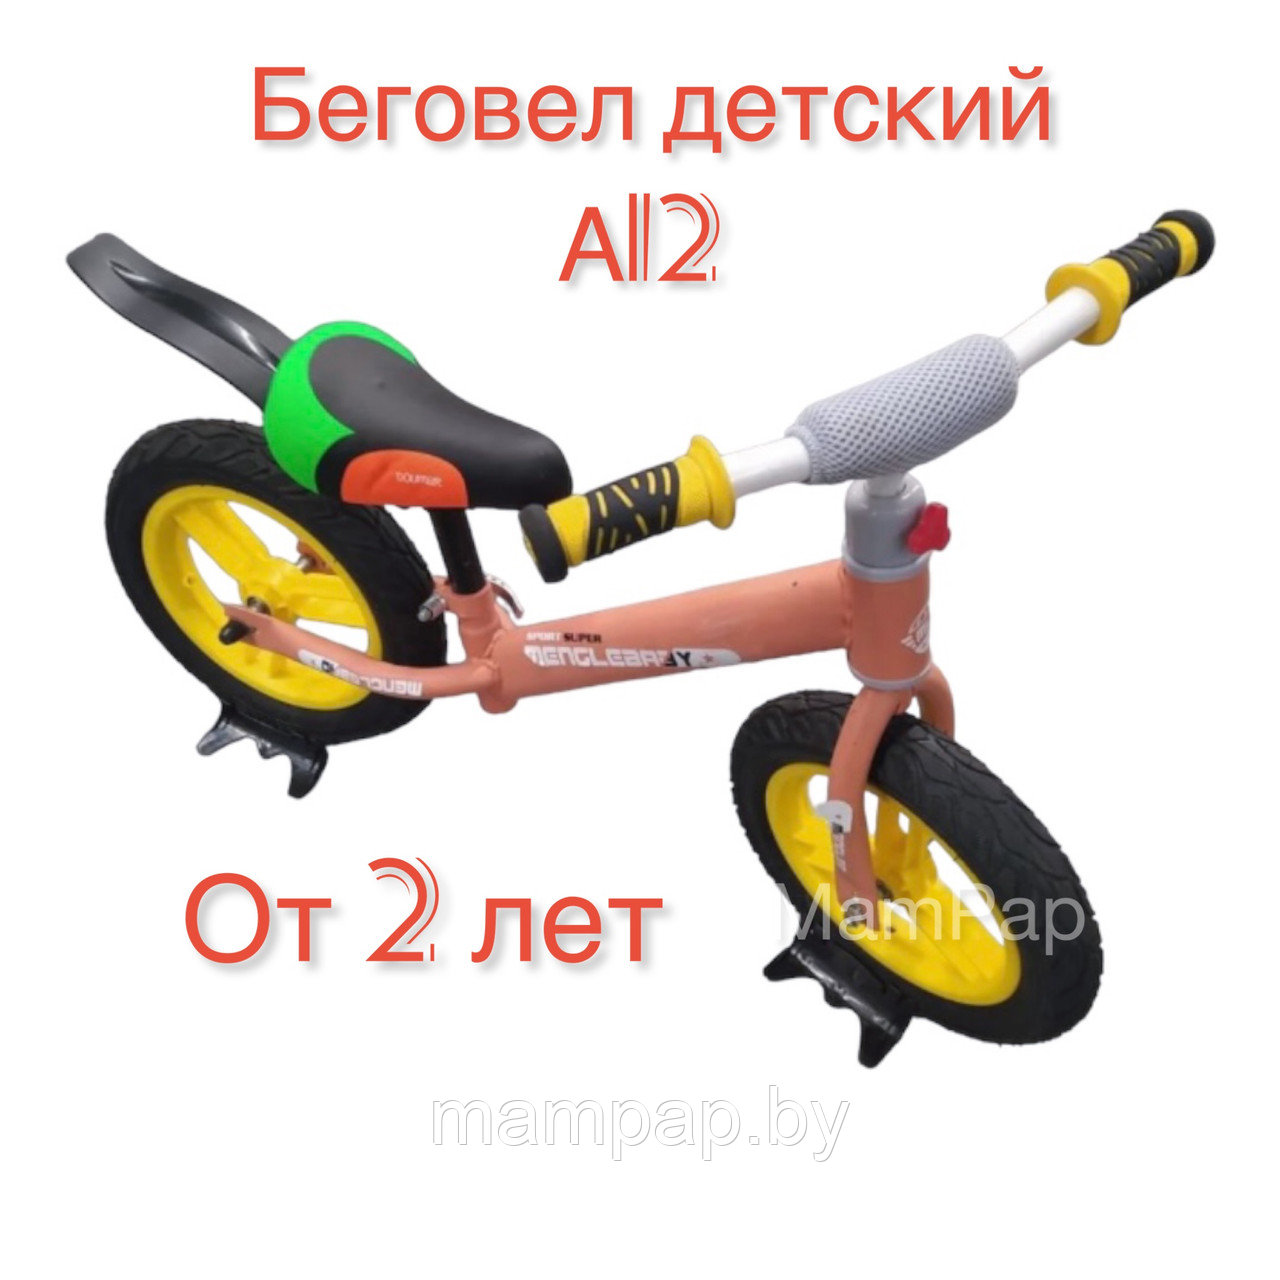 A-12 Беговел детский 12", велосипед без колес , резиновые бескамерные колеса, c задним  брызговиком